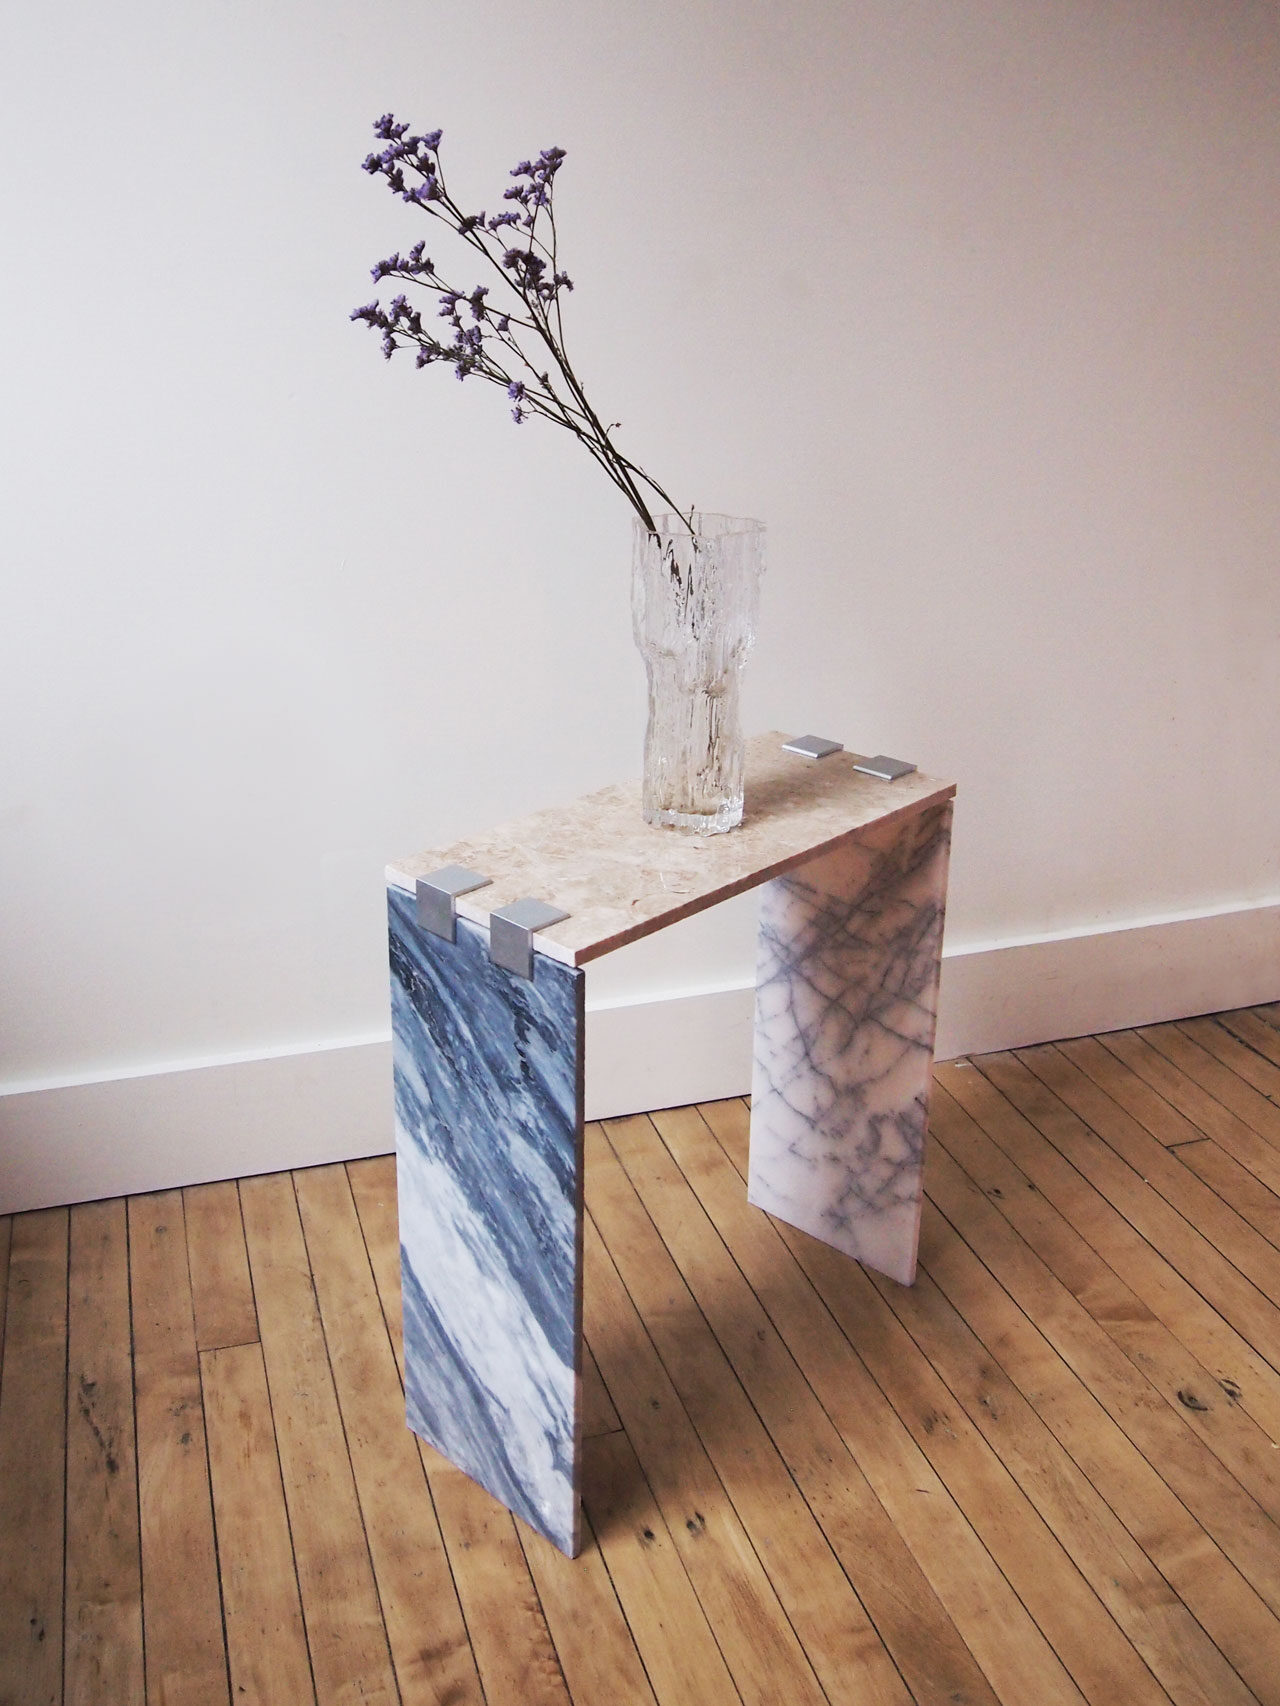 DIY marble tile side table designed by Aandersson